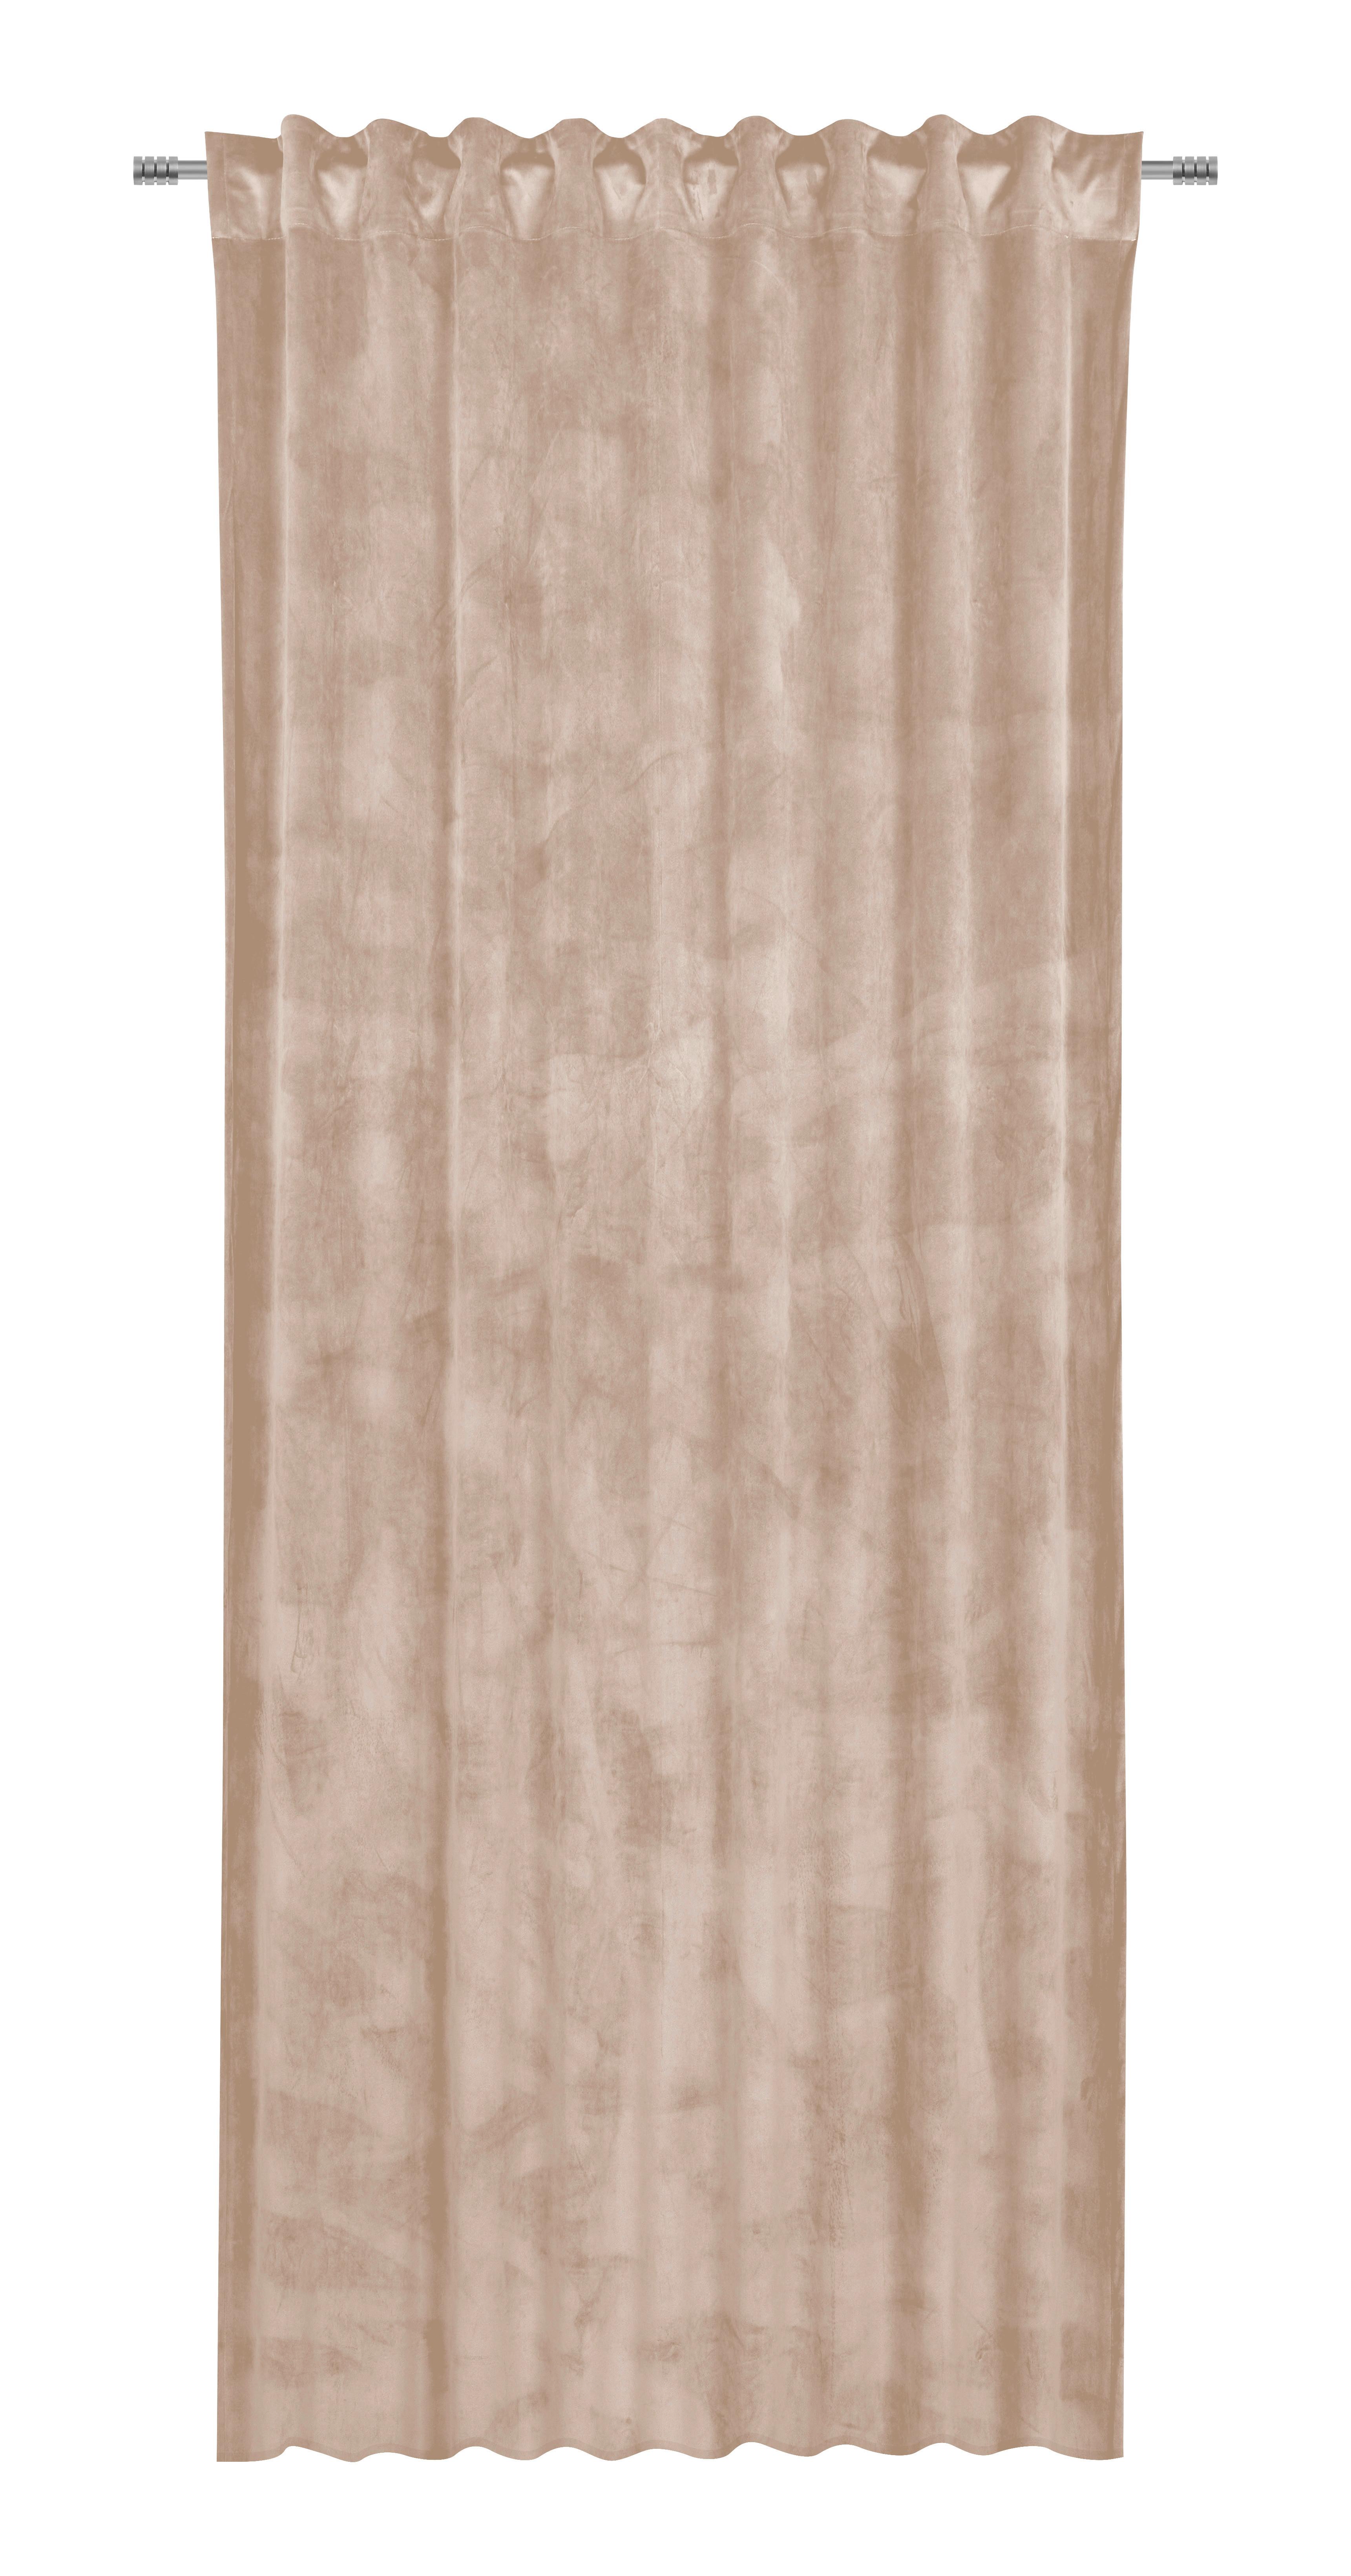 Gotova Zavjesa 140/245cm Viola - bež, Konventionell, tekstil (140/245cm) - Premium Living